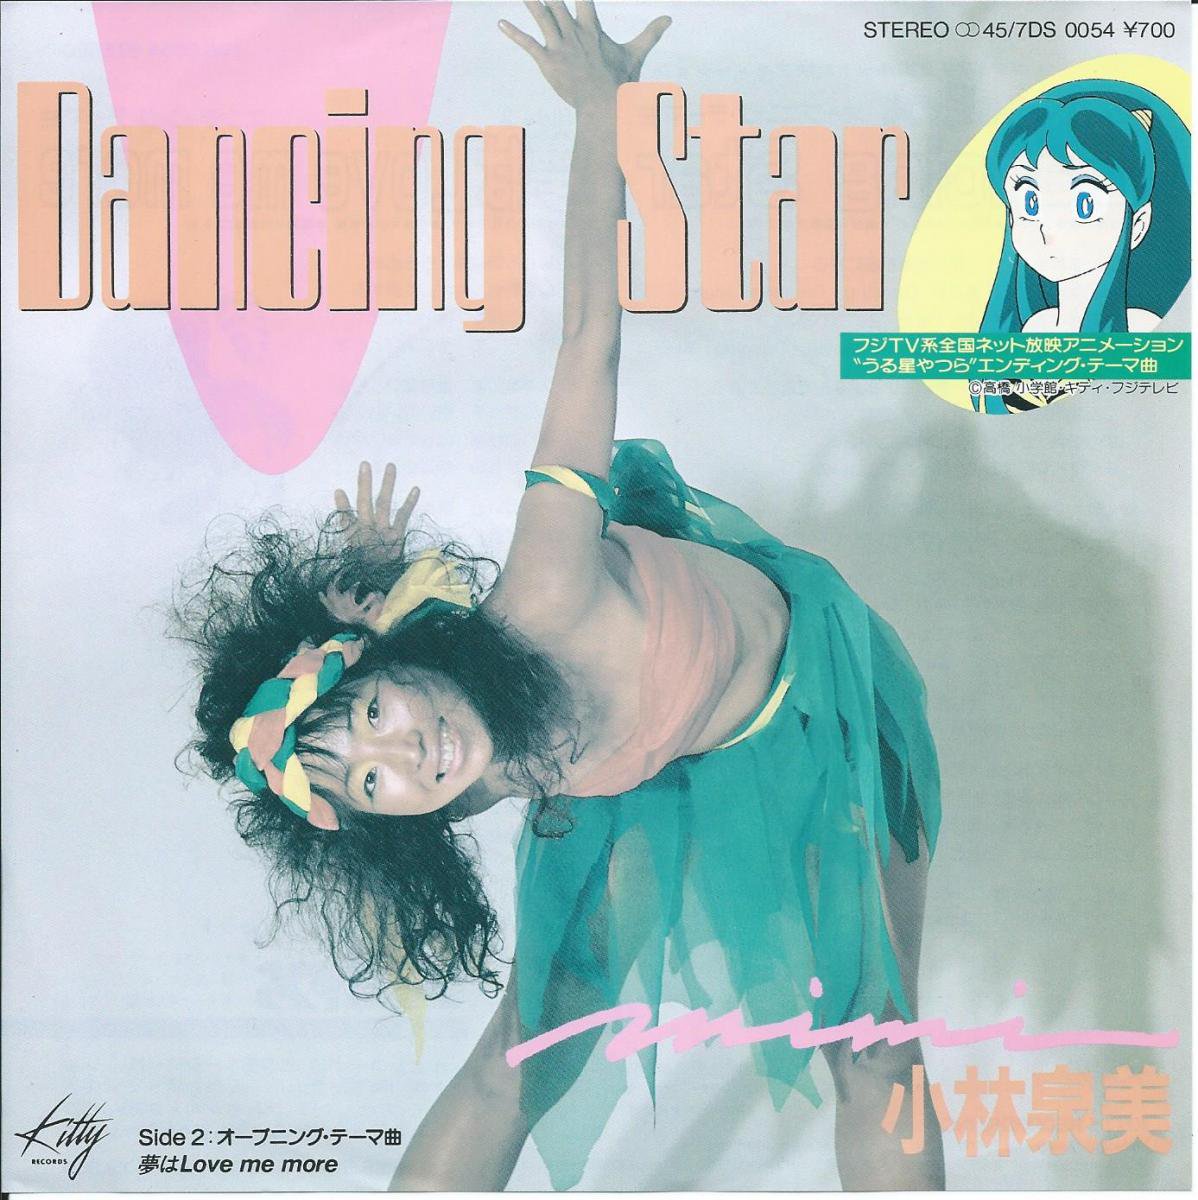 小林泉美 MIMI / DANCING STAR / 夢はLOVE ME MORE (うる星やつら) (7